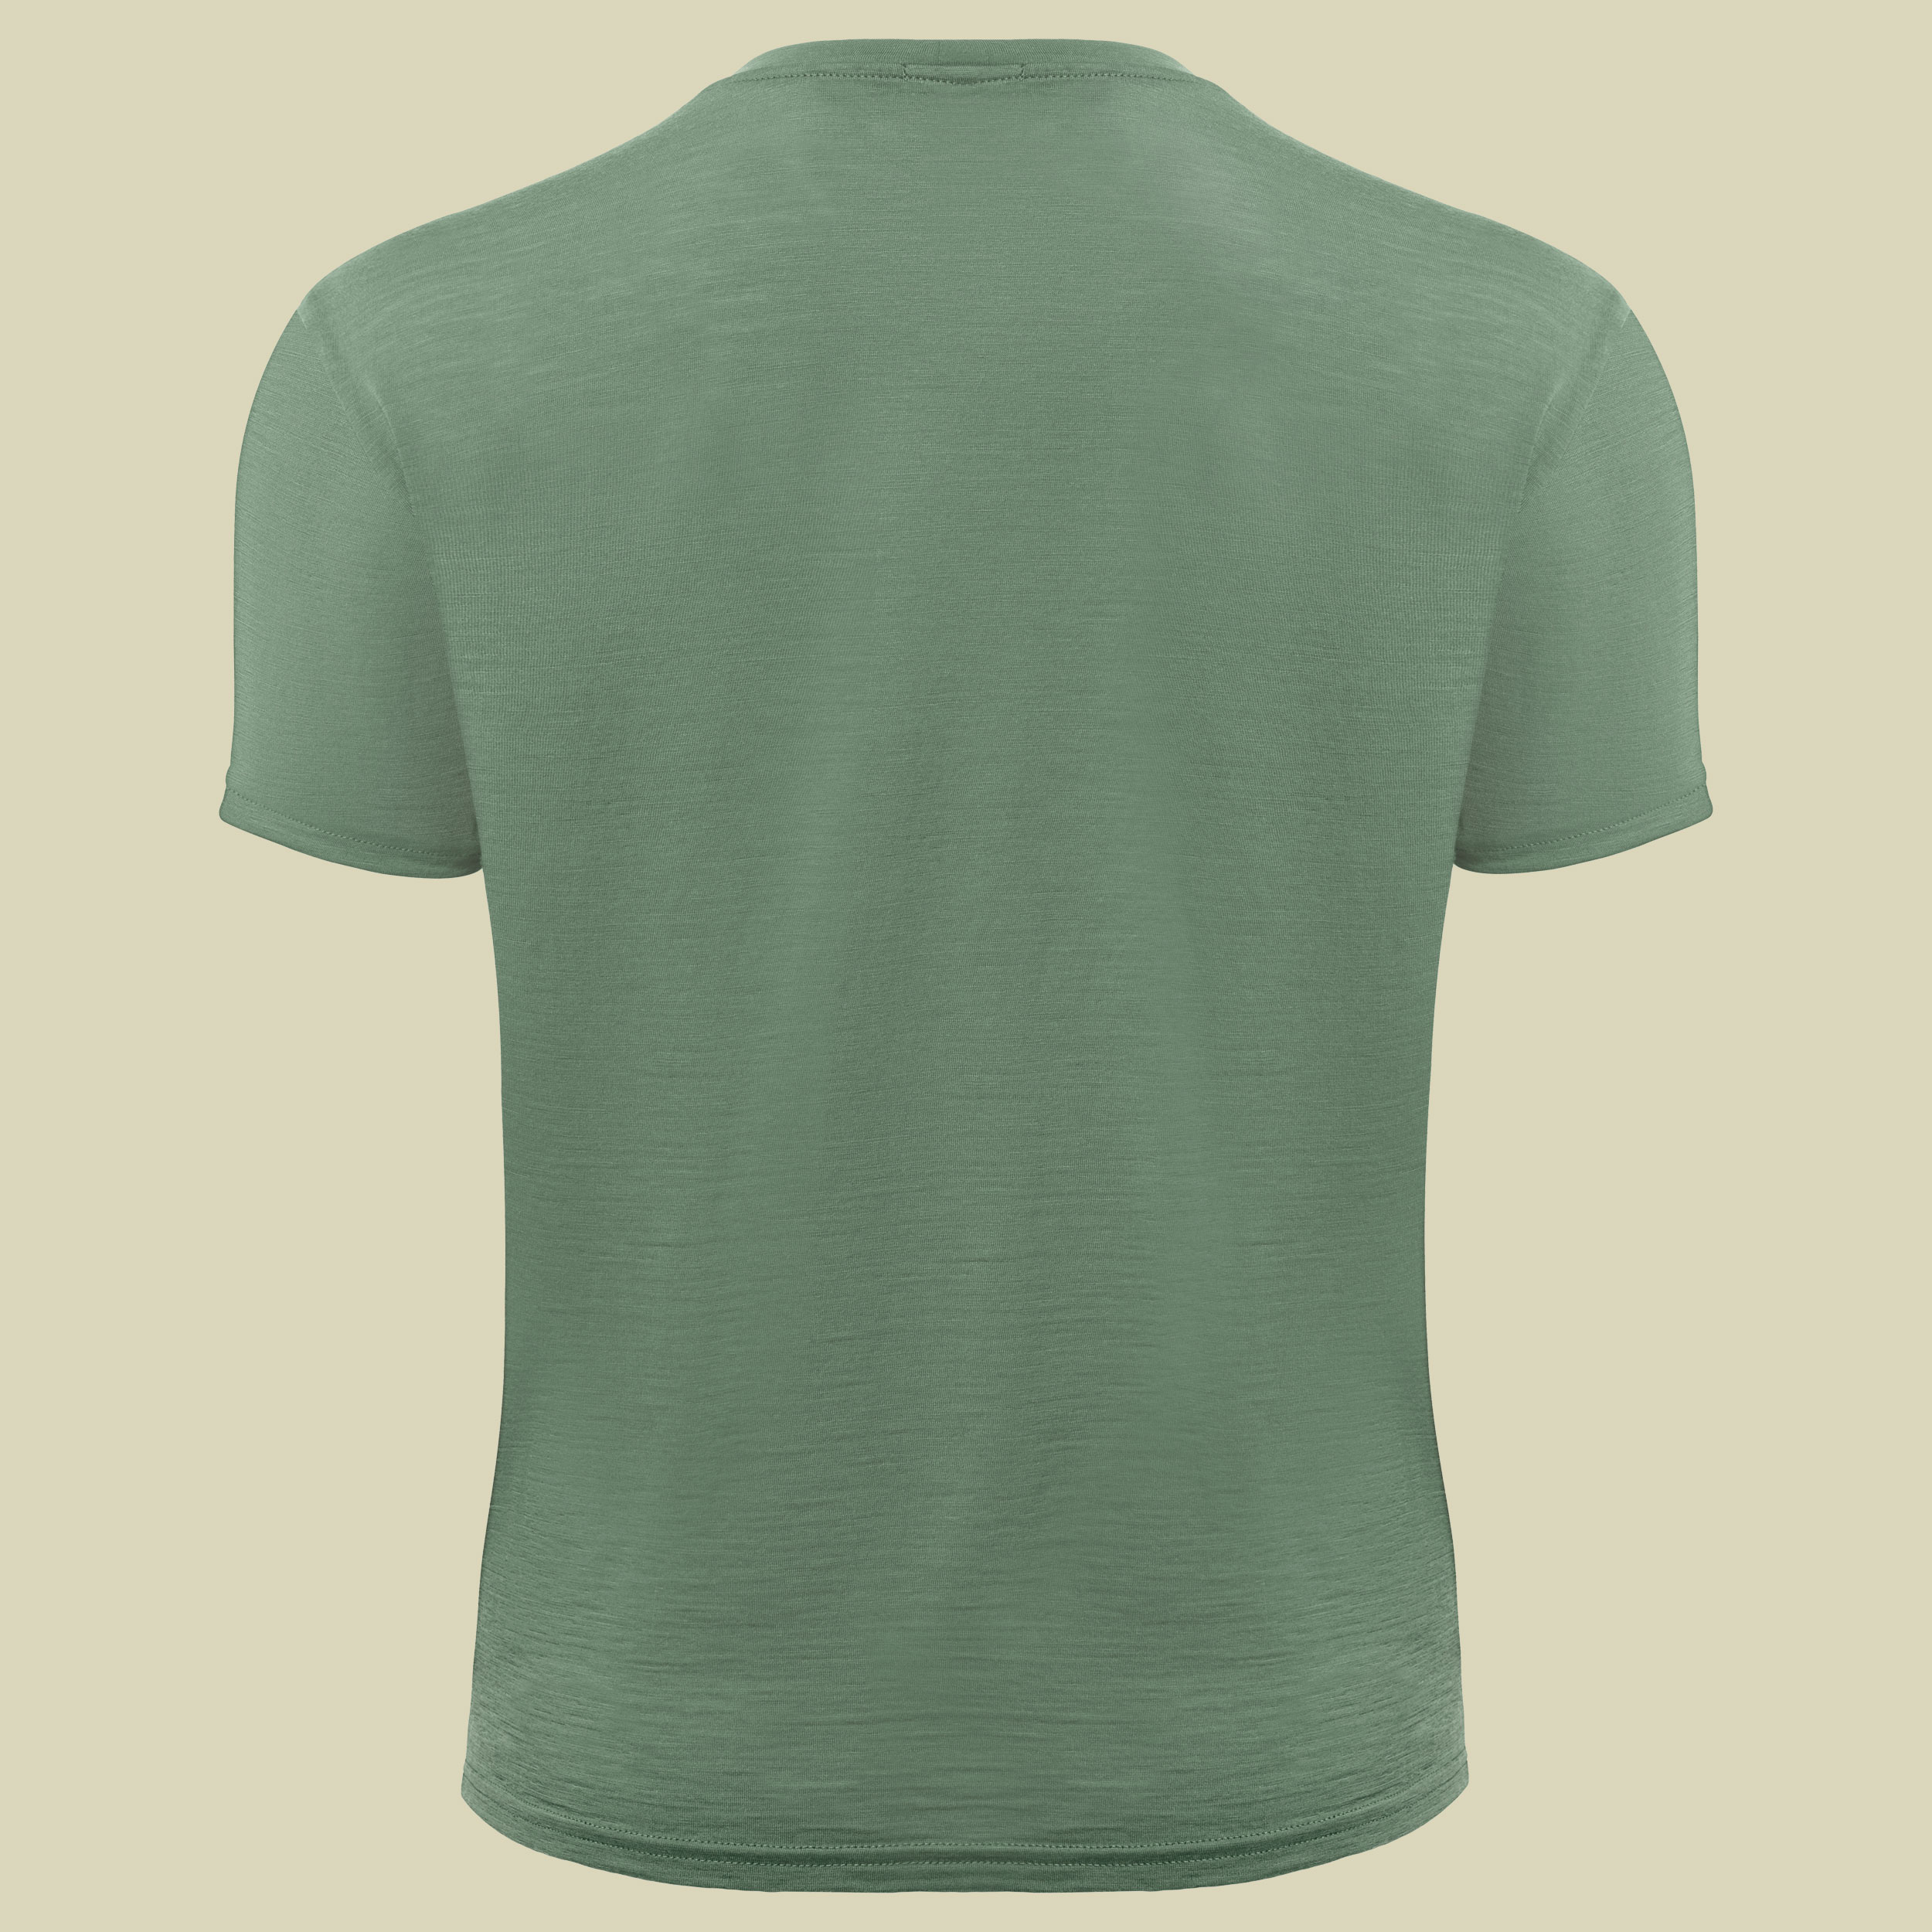 LightWool T-Shirt Men Größe M  Farbe dark ivy